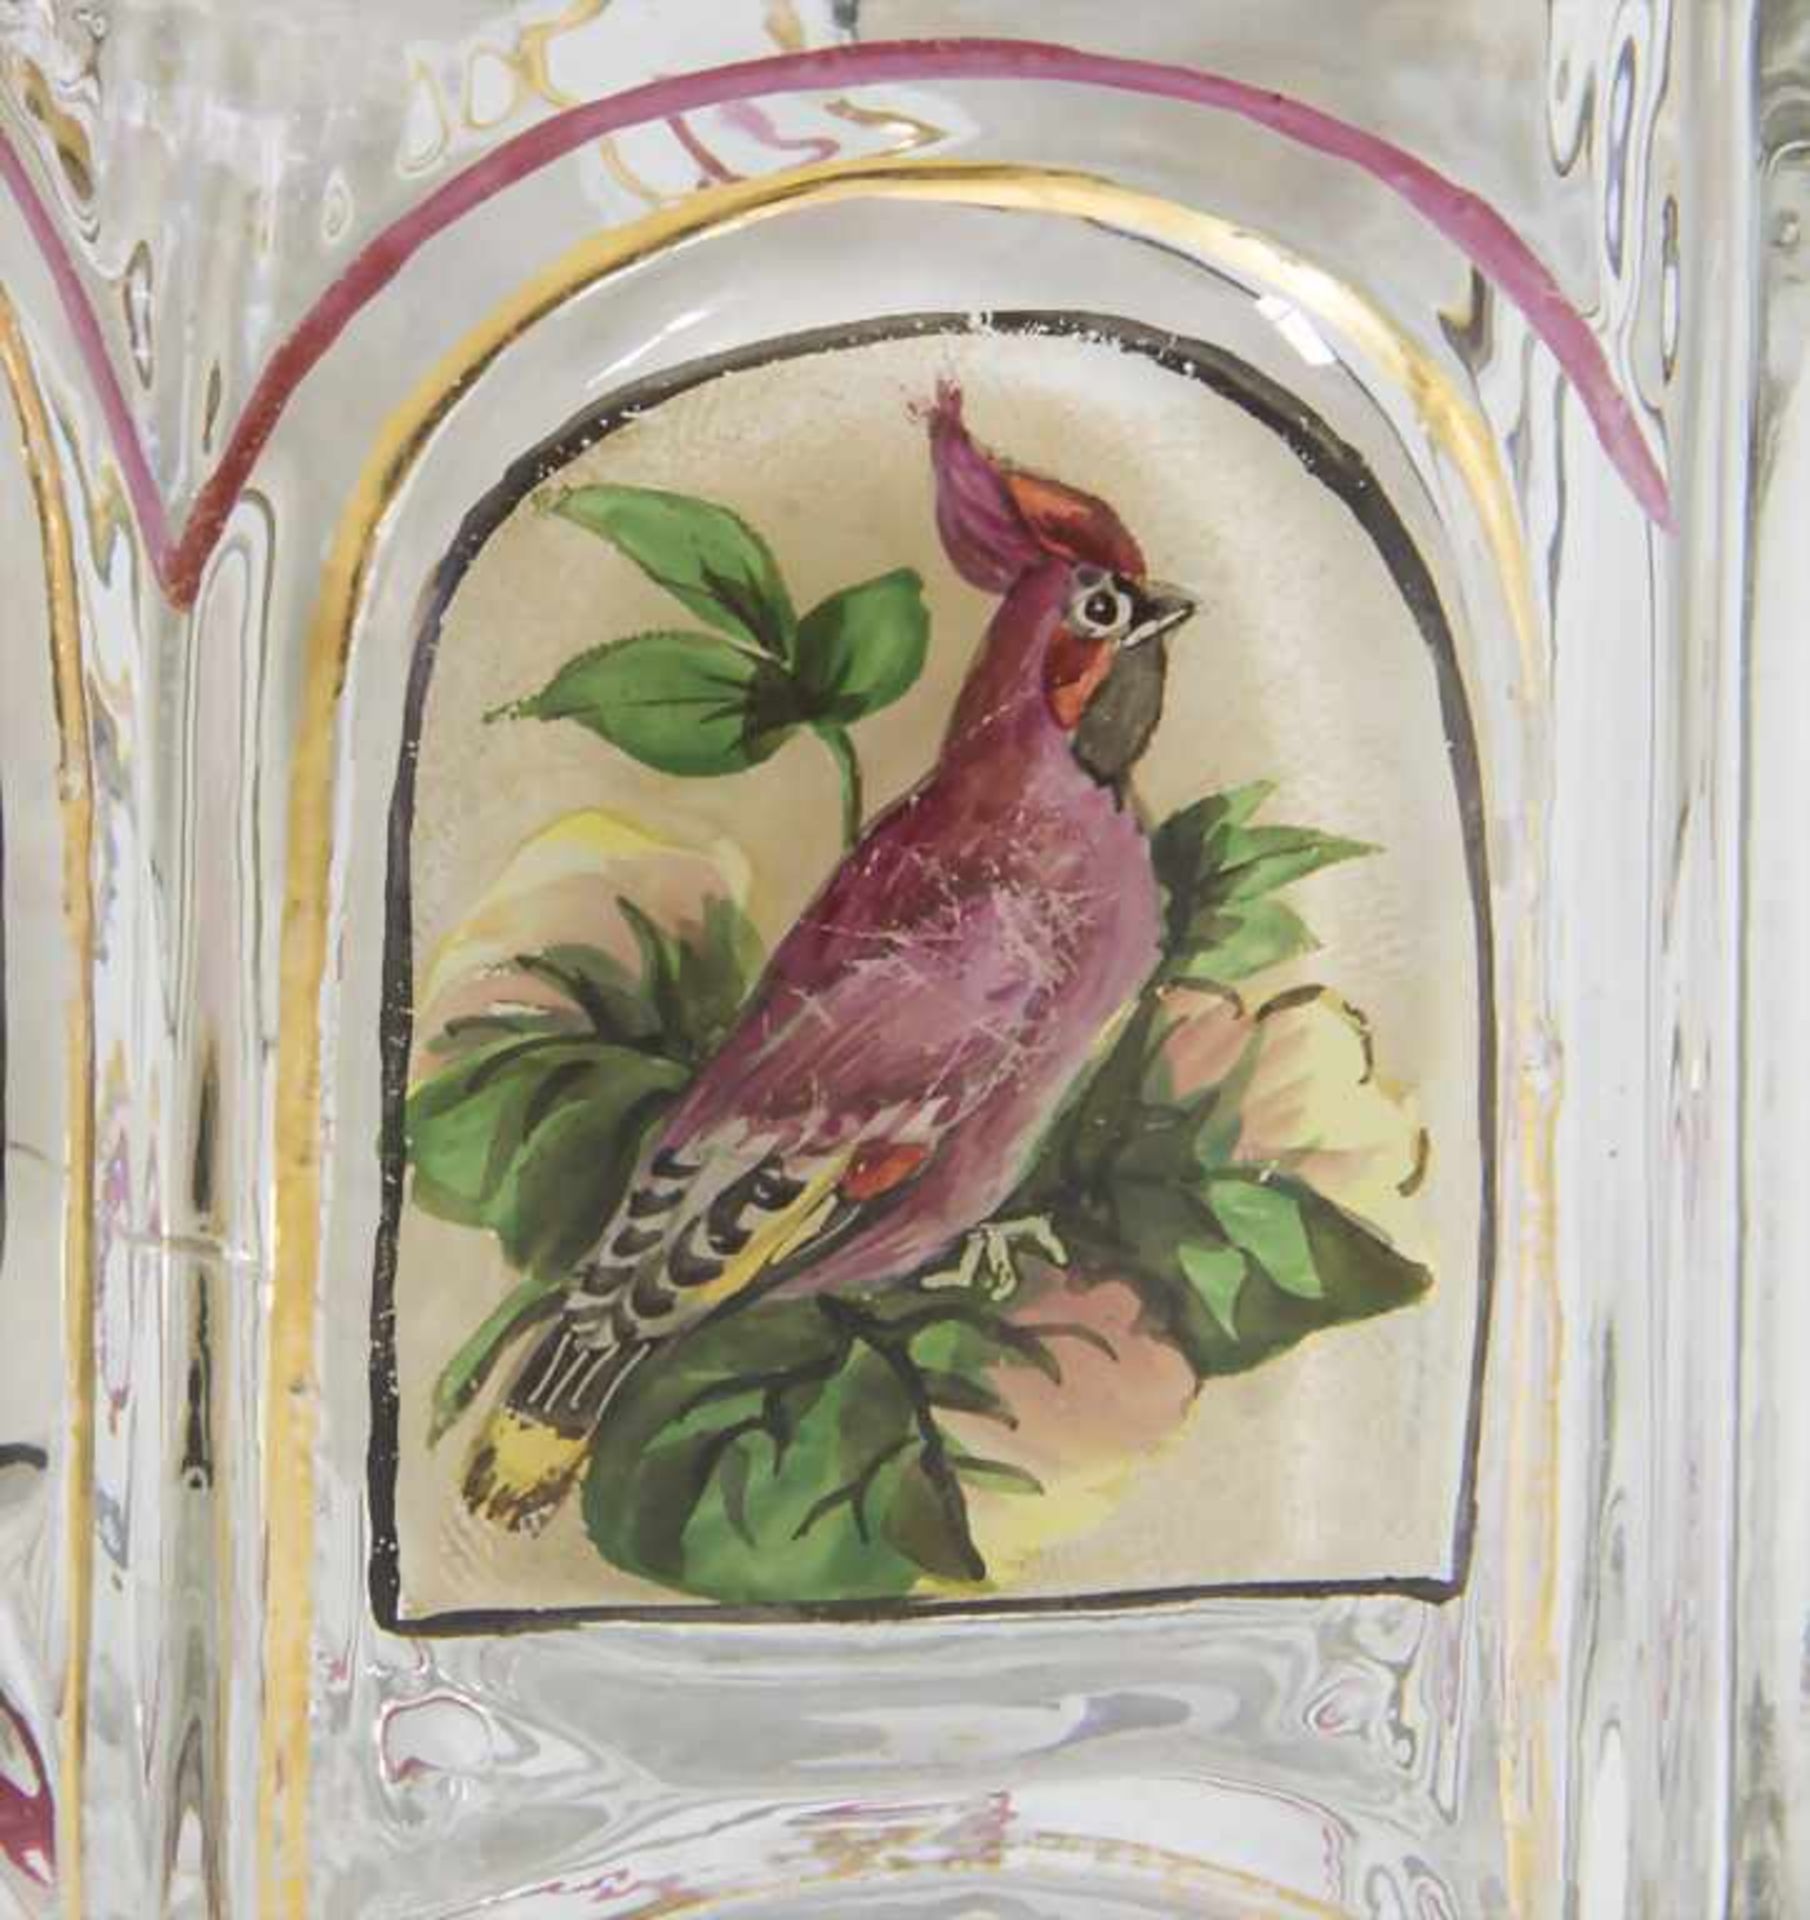 Glaskrug mit Figuren, Rosen und Vögeln / A glass jug with figures, birds and rosesMat - Bild 5 aus 5